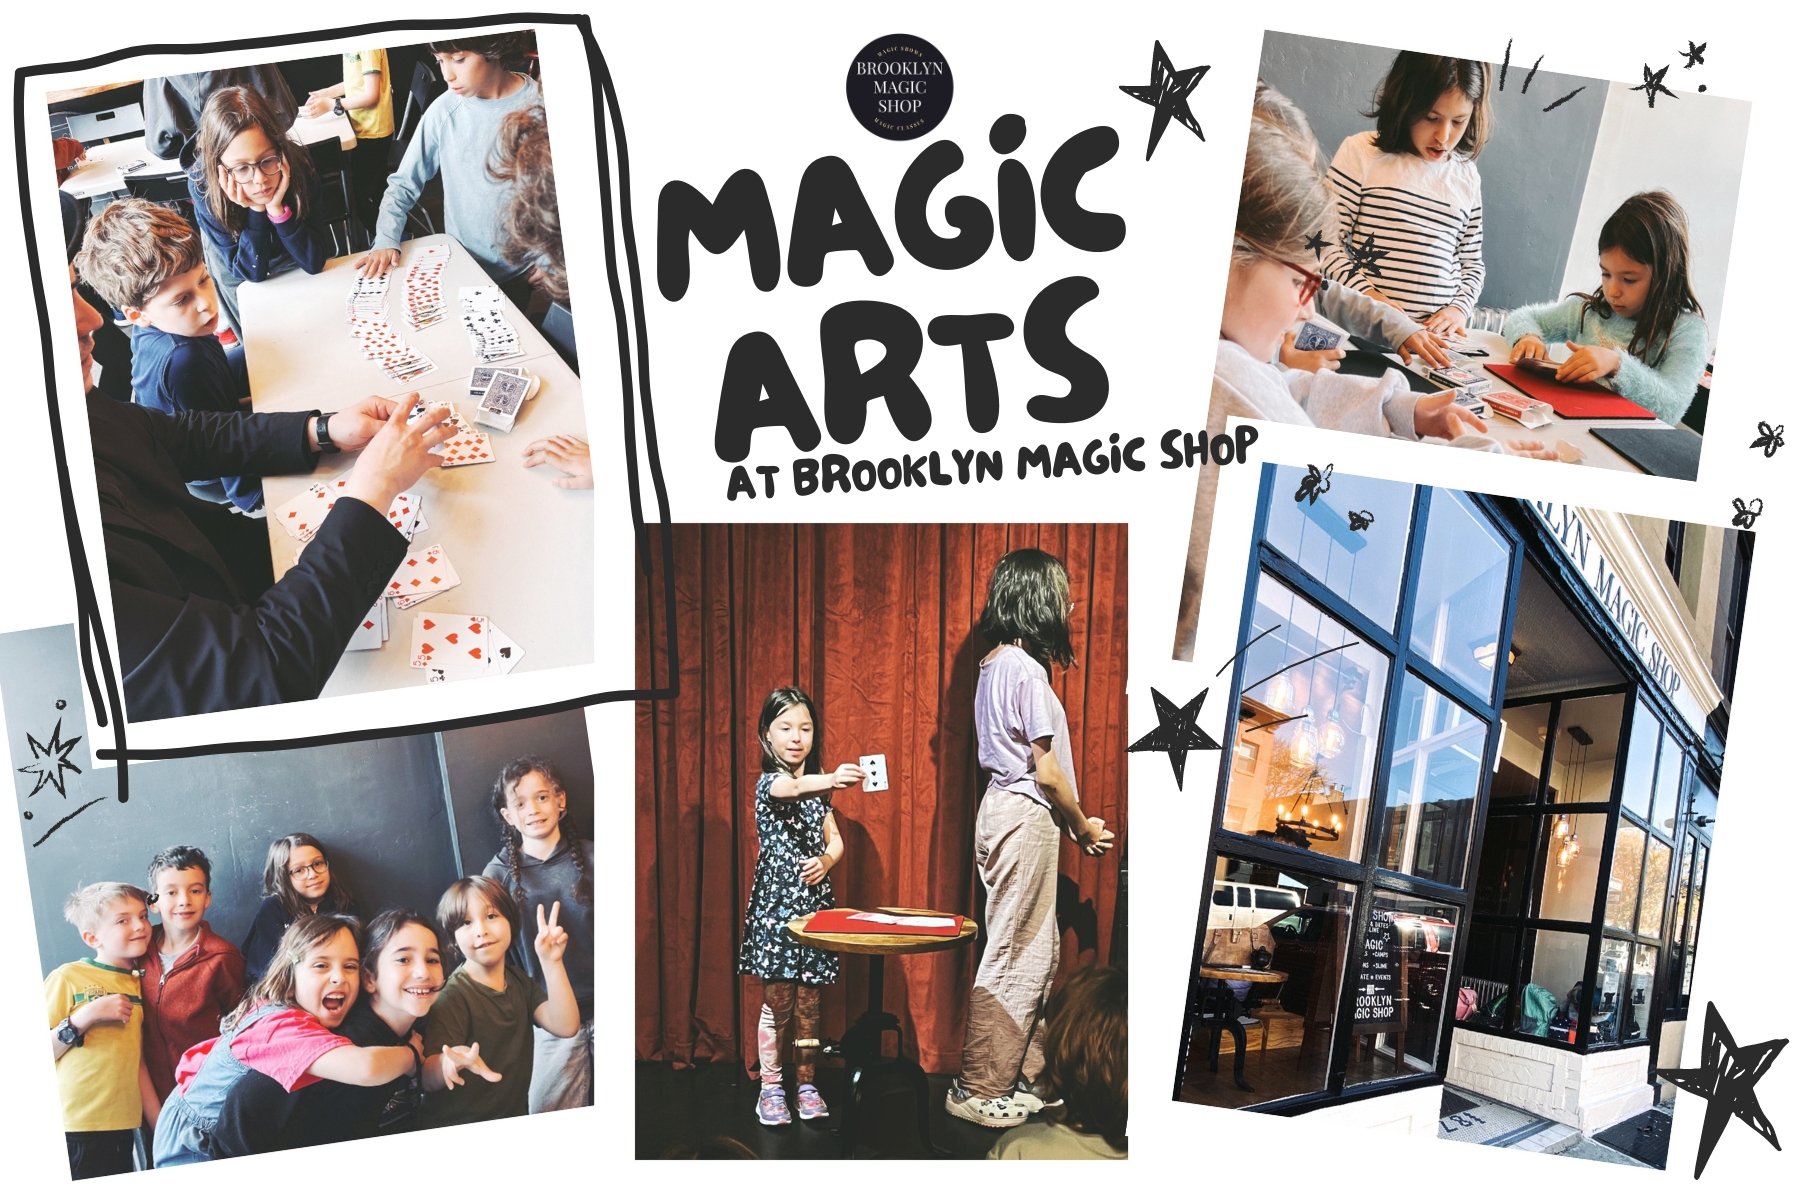 Brooklyn Magic Shop - Magic Arts Programs - Brooklyn, NY